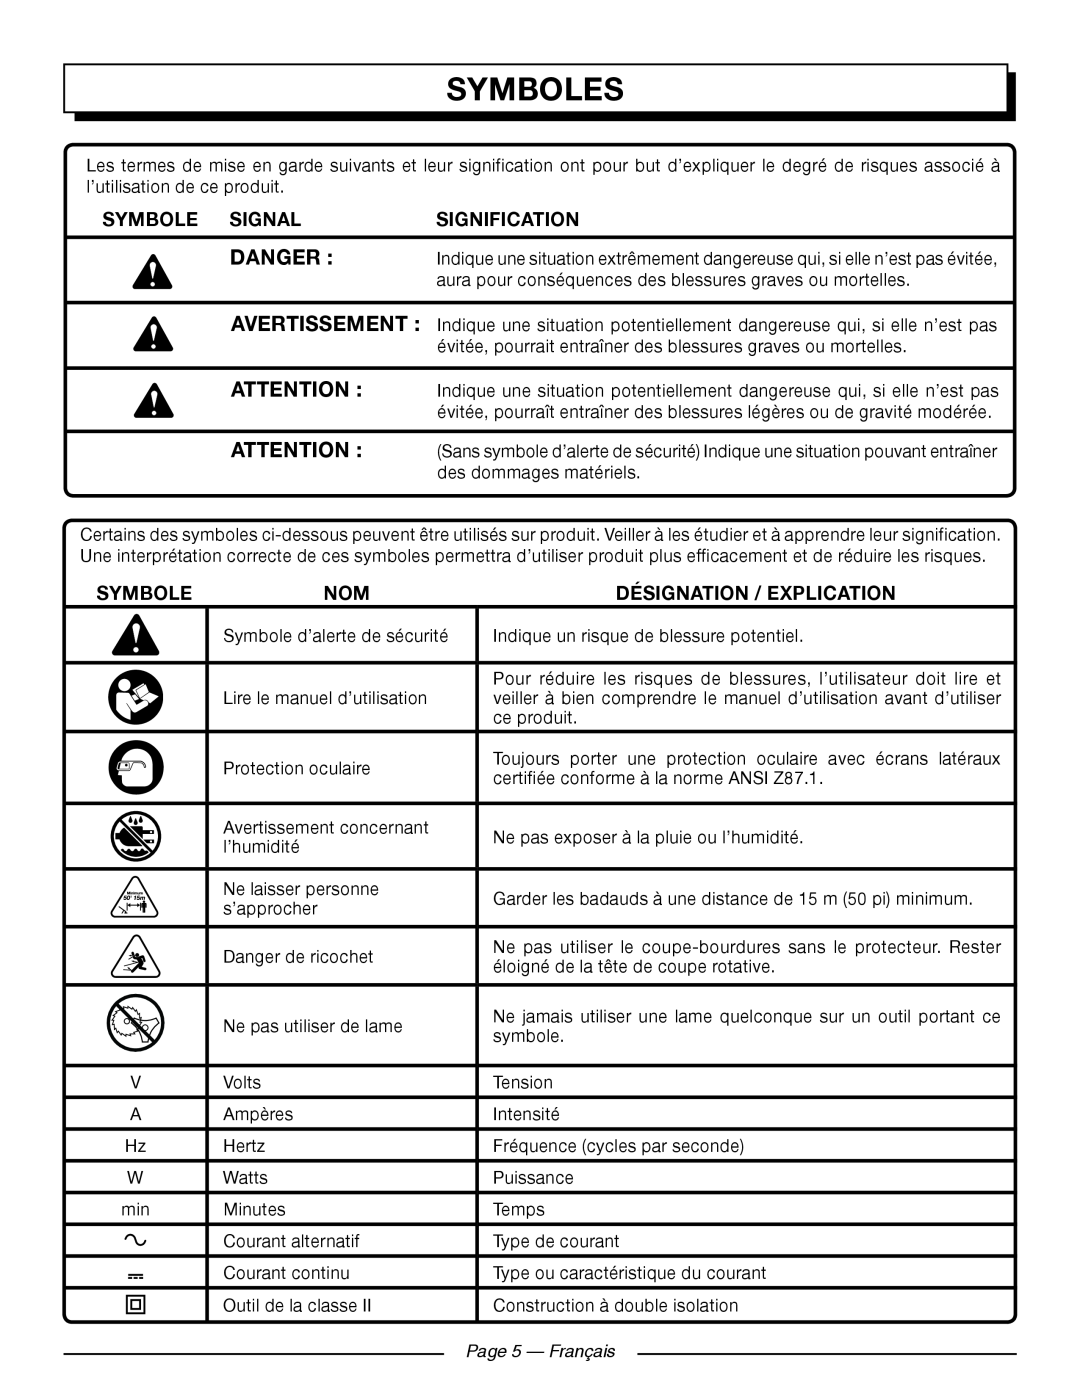 Homelite UT41121 Symboles, Danger , Symbole Signal, Signification, Désignation / Explication, Page 5 — Français 